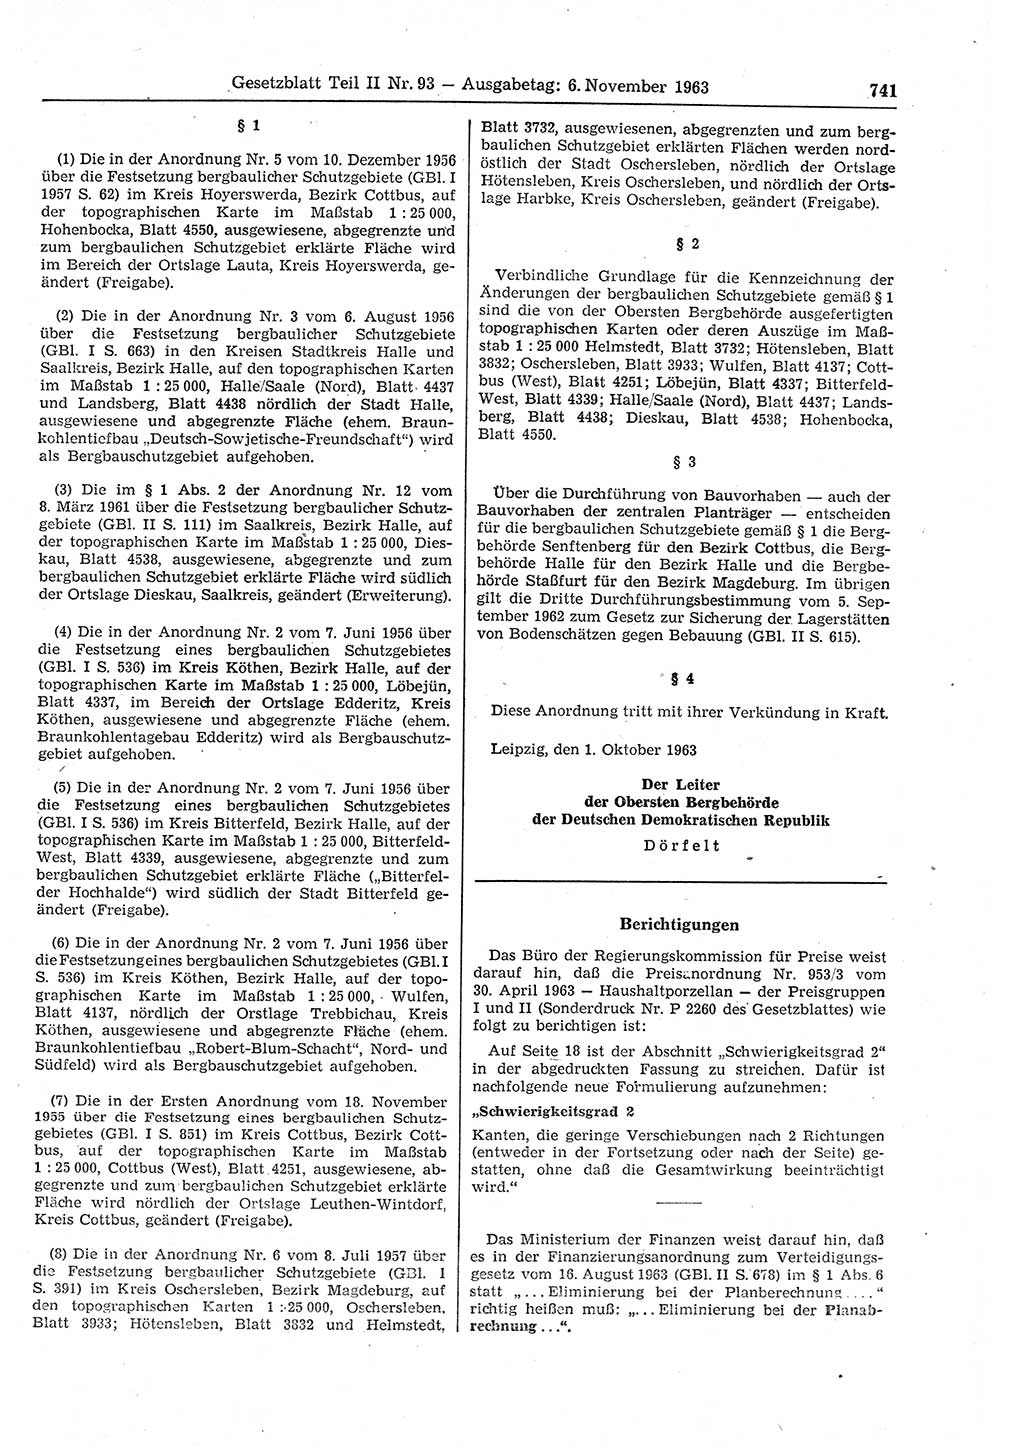 Gesetzblatt (GBl.) der Deutschen Demokratischen Republik (DDR) Teil ⅠⅠ 1963, Seite 741 (GBl. DDR ⅠⅠ 1963, S. 741)